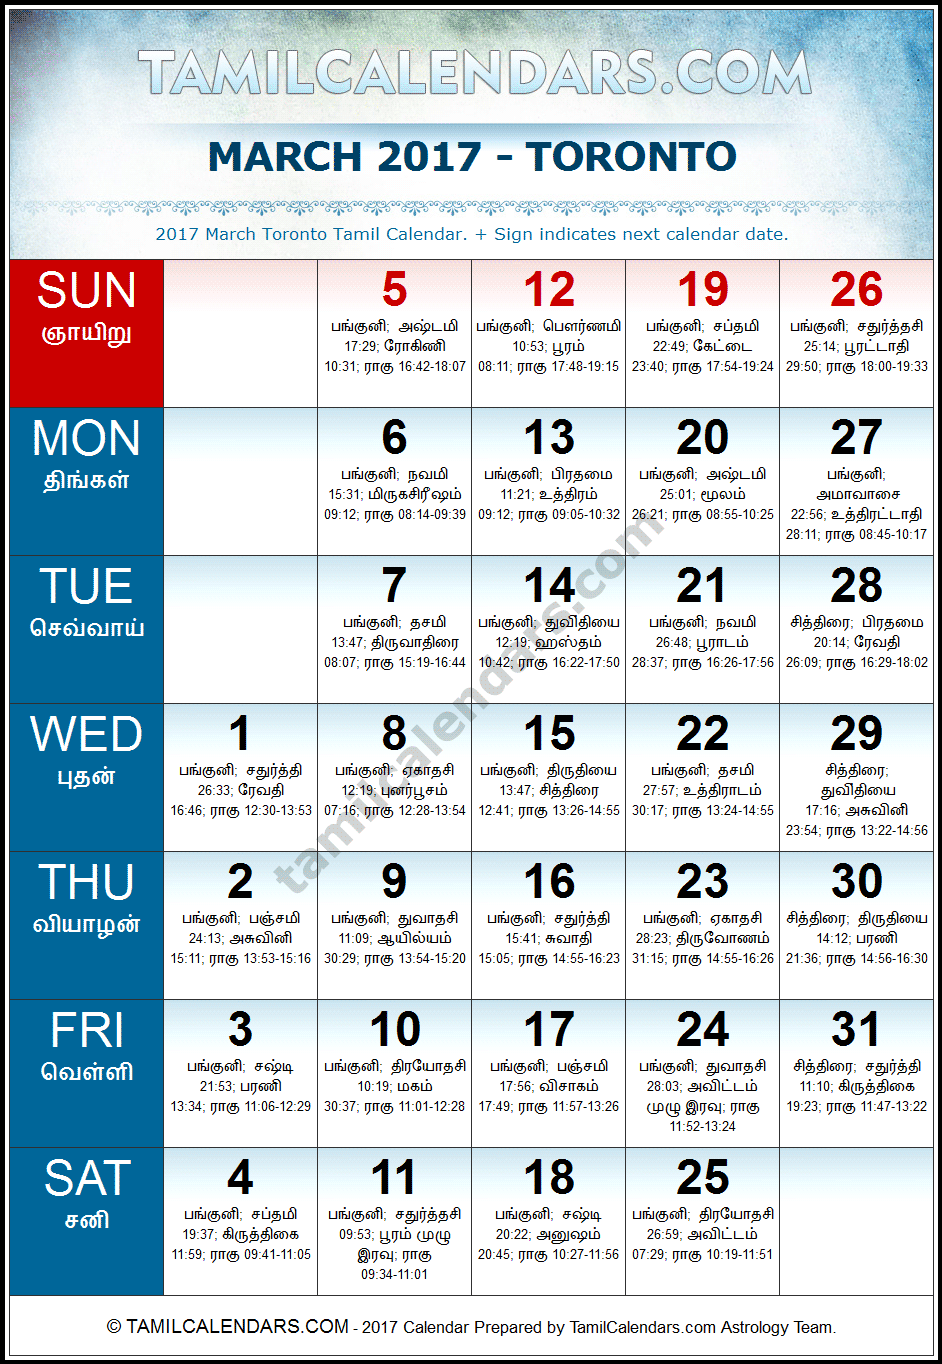 March 2017 Tamil Calendar for Toronto, Canada